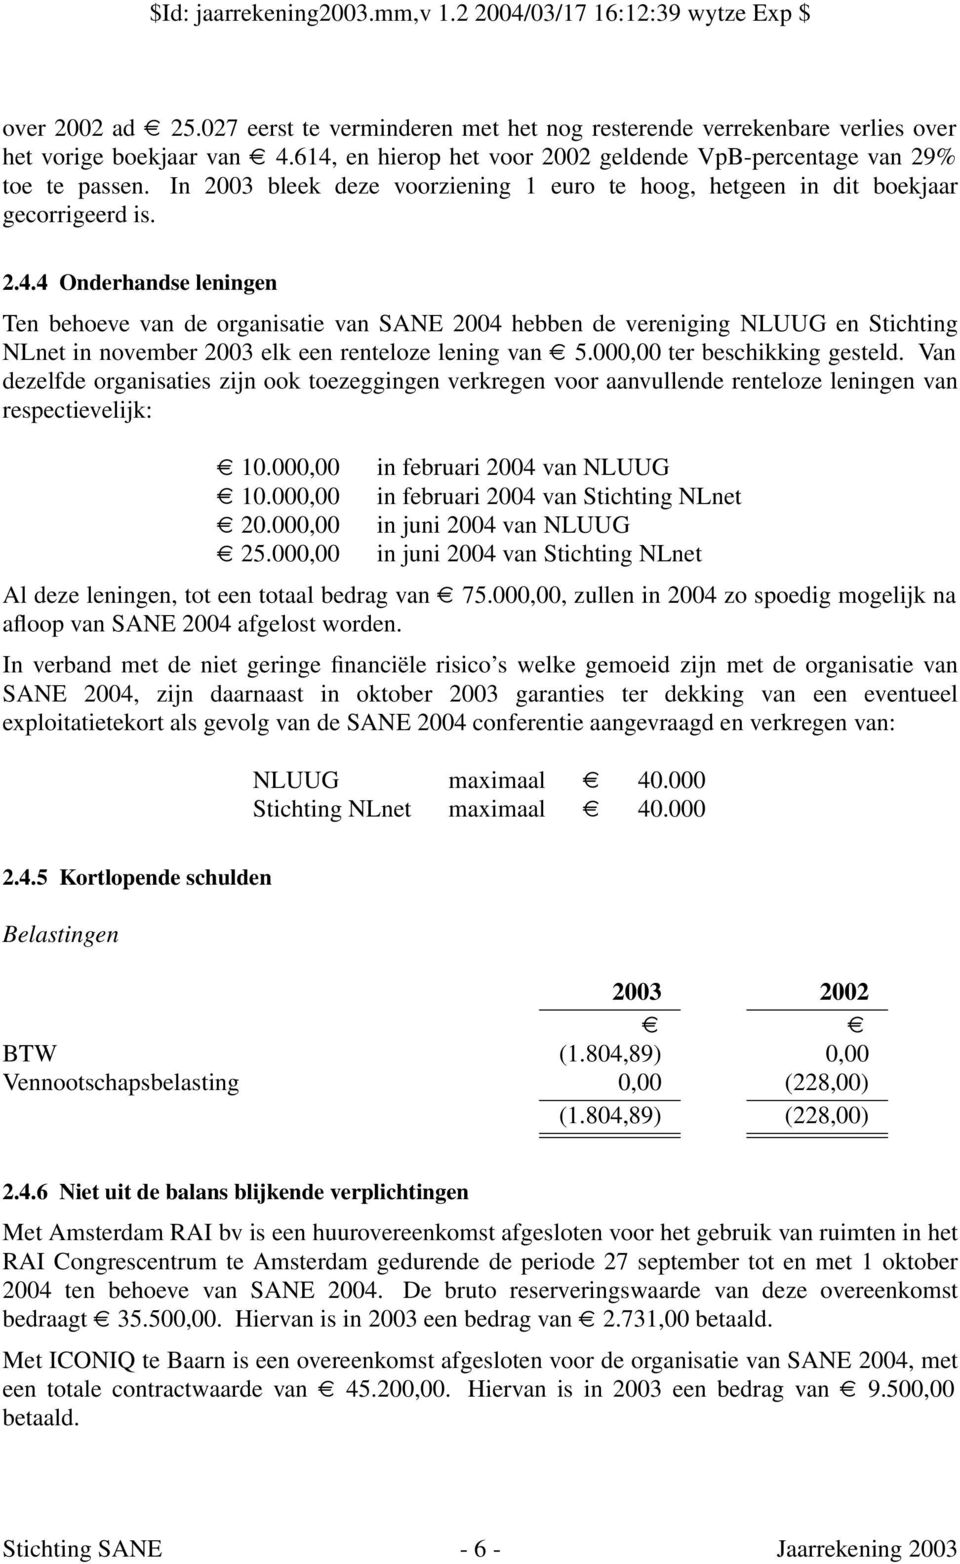 4 Onderhandse leningen Ten behoeve van de organisatie van SANE 2004 hebben de vereniging NLUUG en Stichting NLnet in november 2003 elk een renteloze lening van 5.000,00 ter beschikking gesteld.